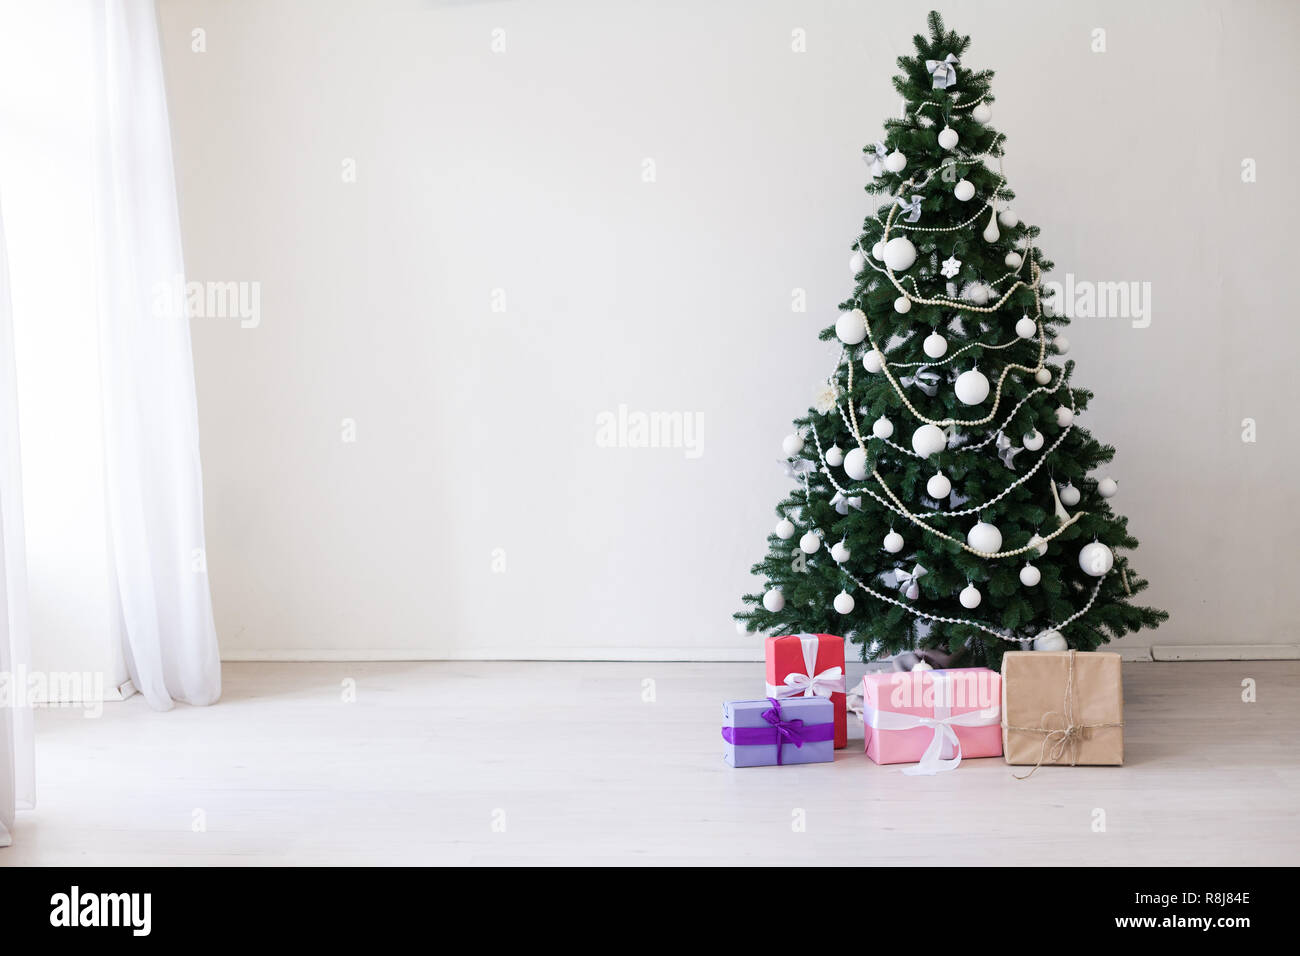 Luci Di Natale In Camera.Luci Di Camera Albero Di Natale Ghirlanda Anno Nuovo Vacanze Doni White Home Decor Foto Stock Alamy